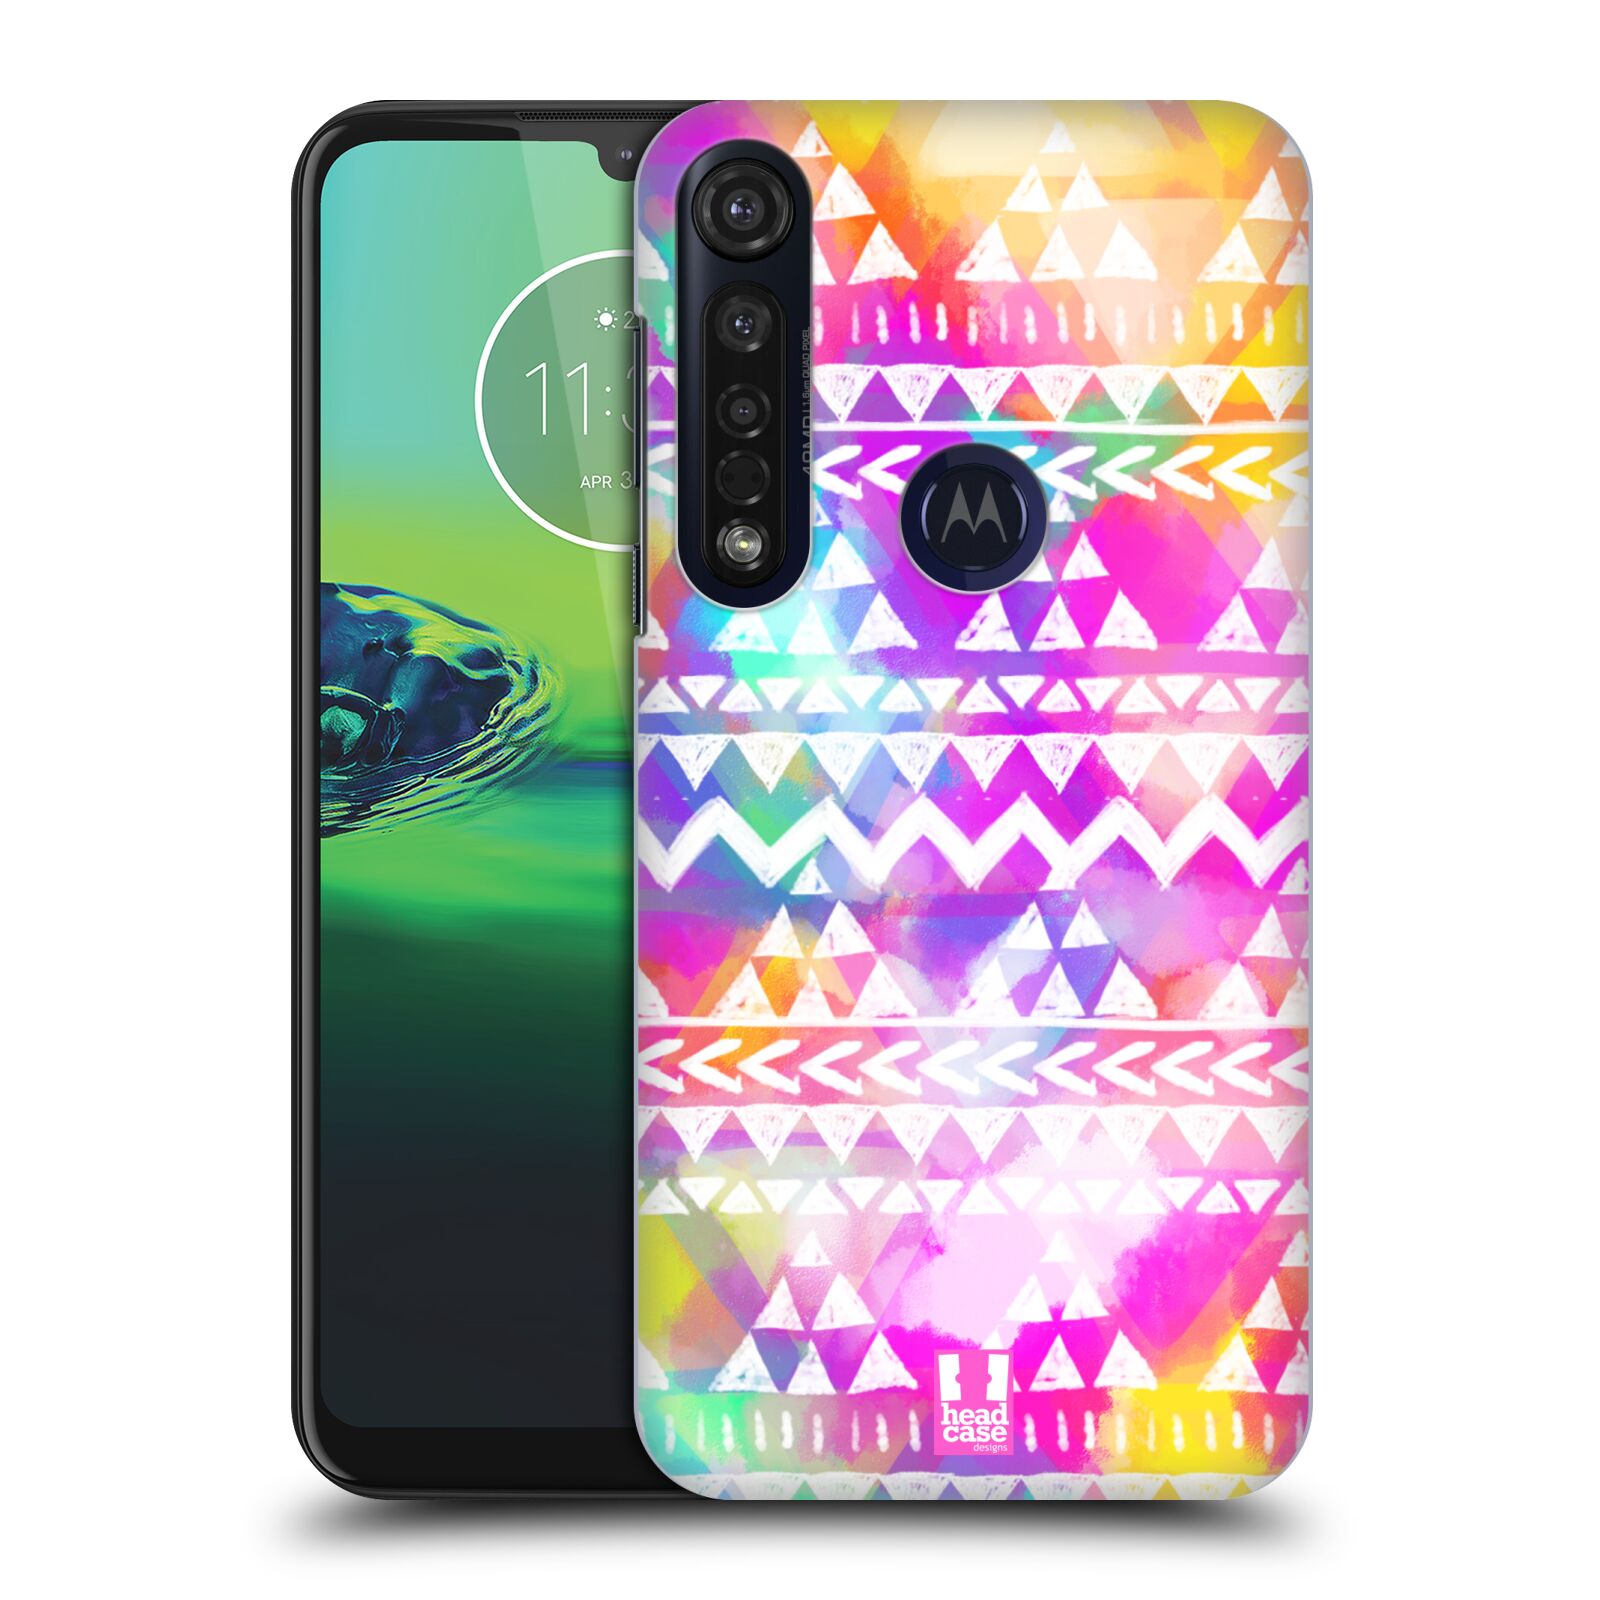 Pouzdro na mobil Motorola Moto G8 PLUS - HEAD CASE - vzor CIK CAK barevné znaky ZÁŘIVA RŮŽOVÁ